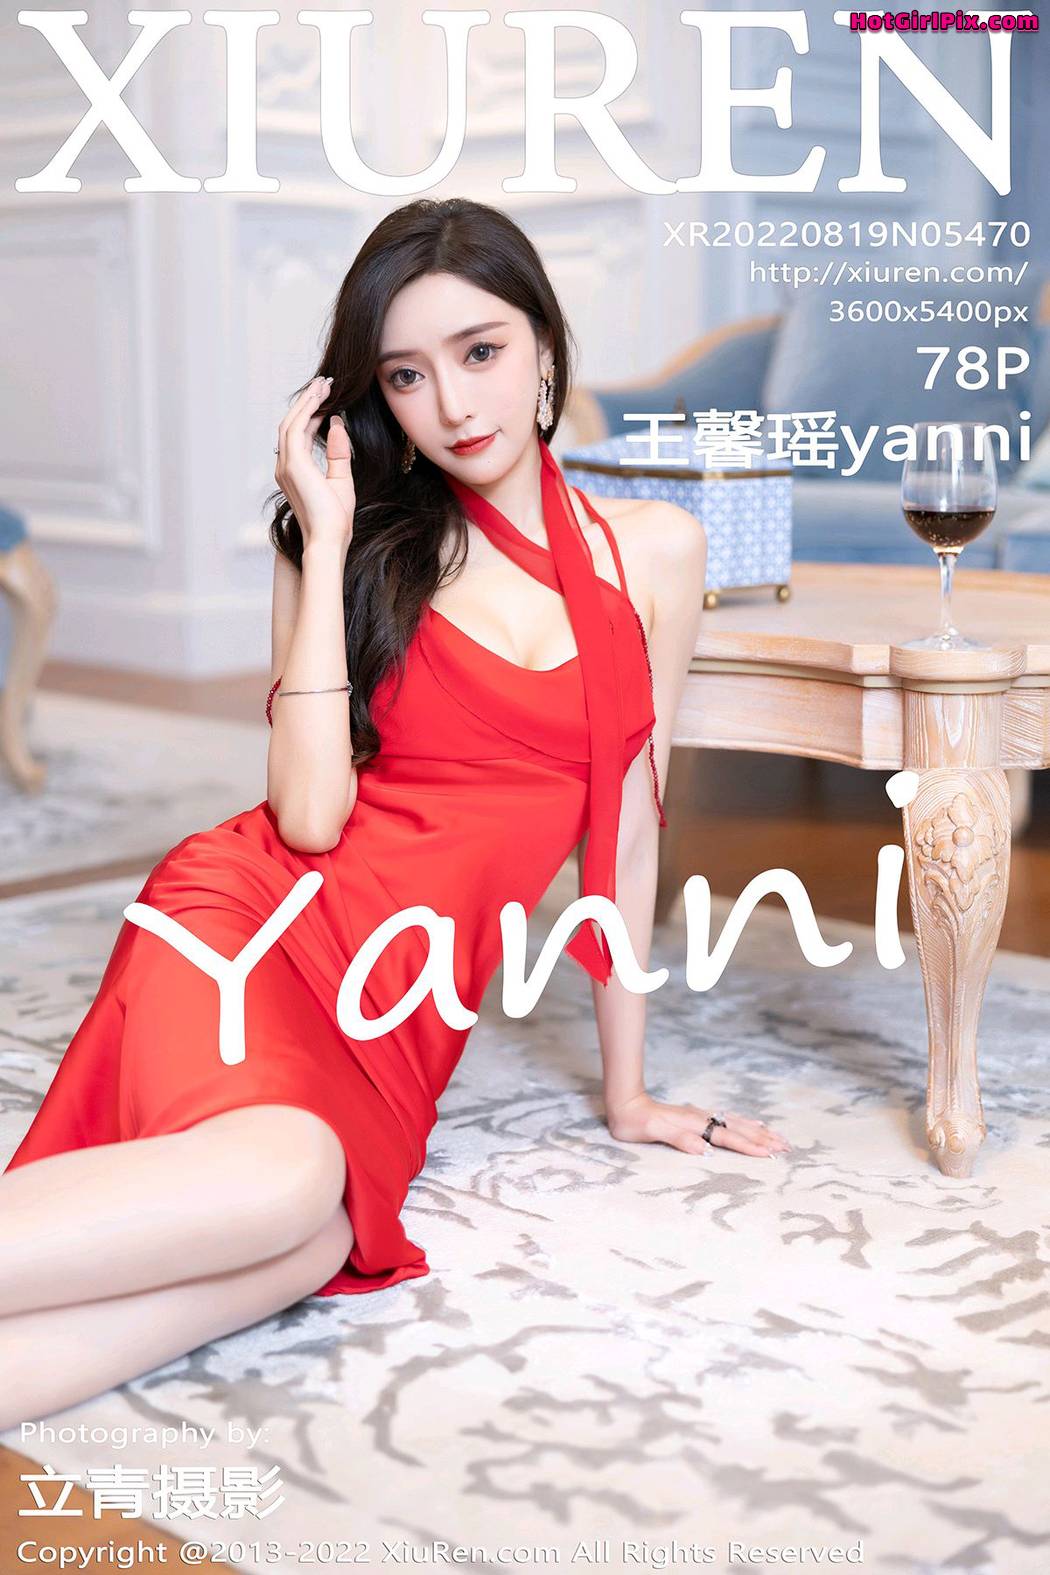 [XIUREN] No.5470 Wang Xin Yao 王馨瑶yanni Cover Photo